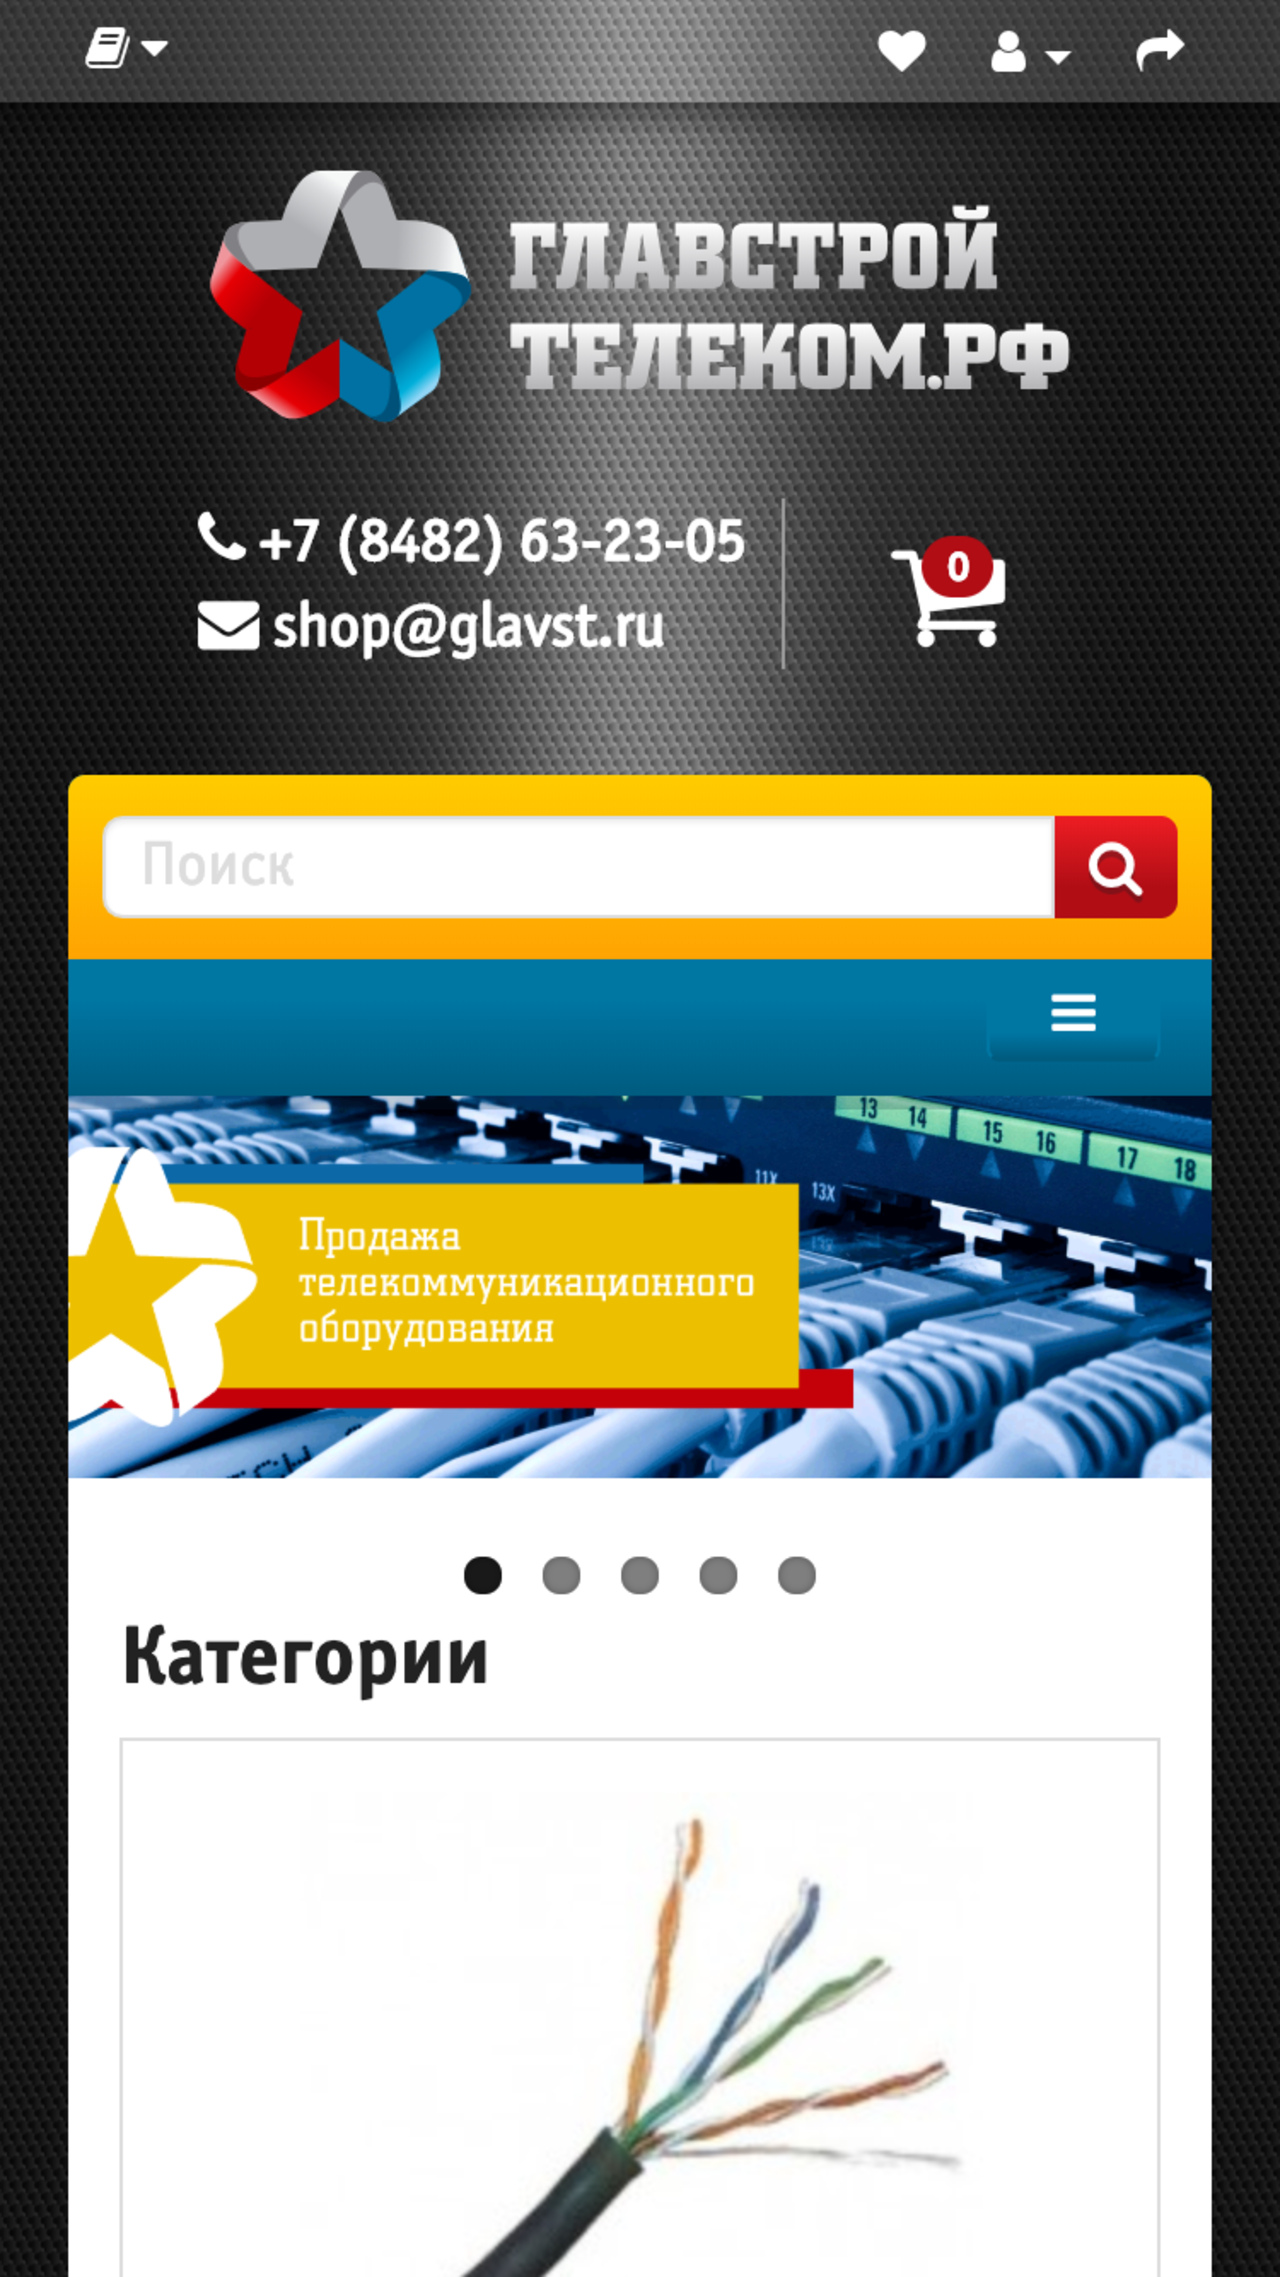 Glavstroy Telecom - Website Shop - Slide 2